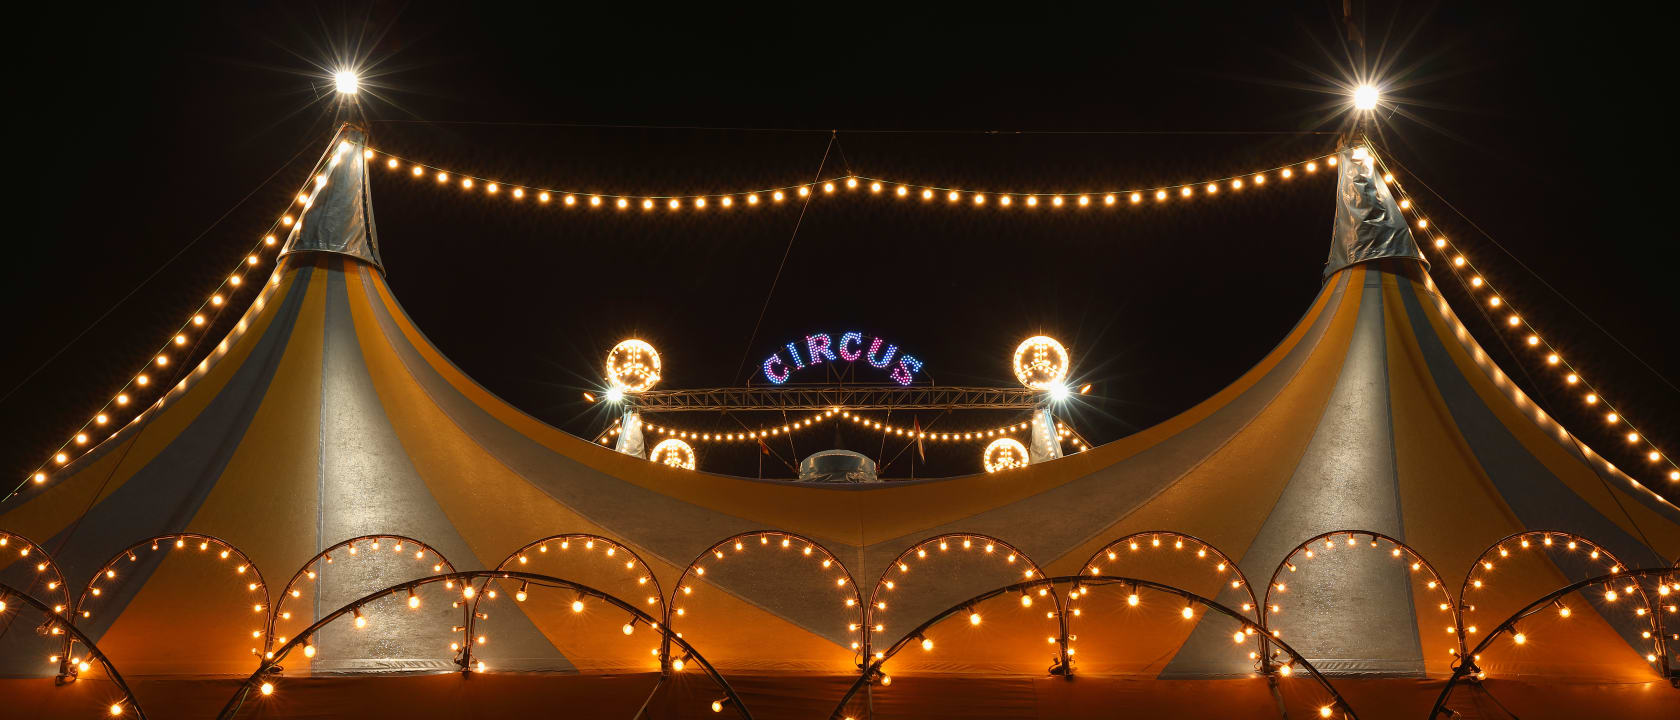 Circus Oz